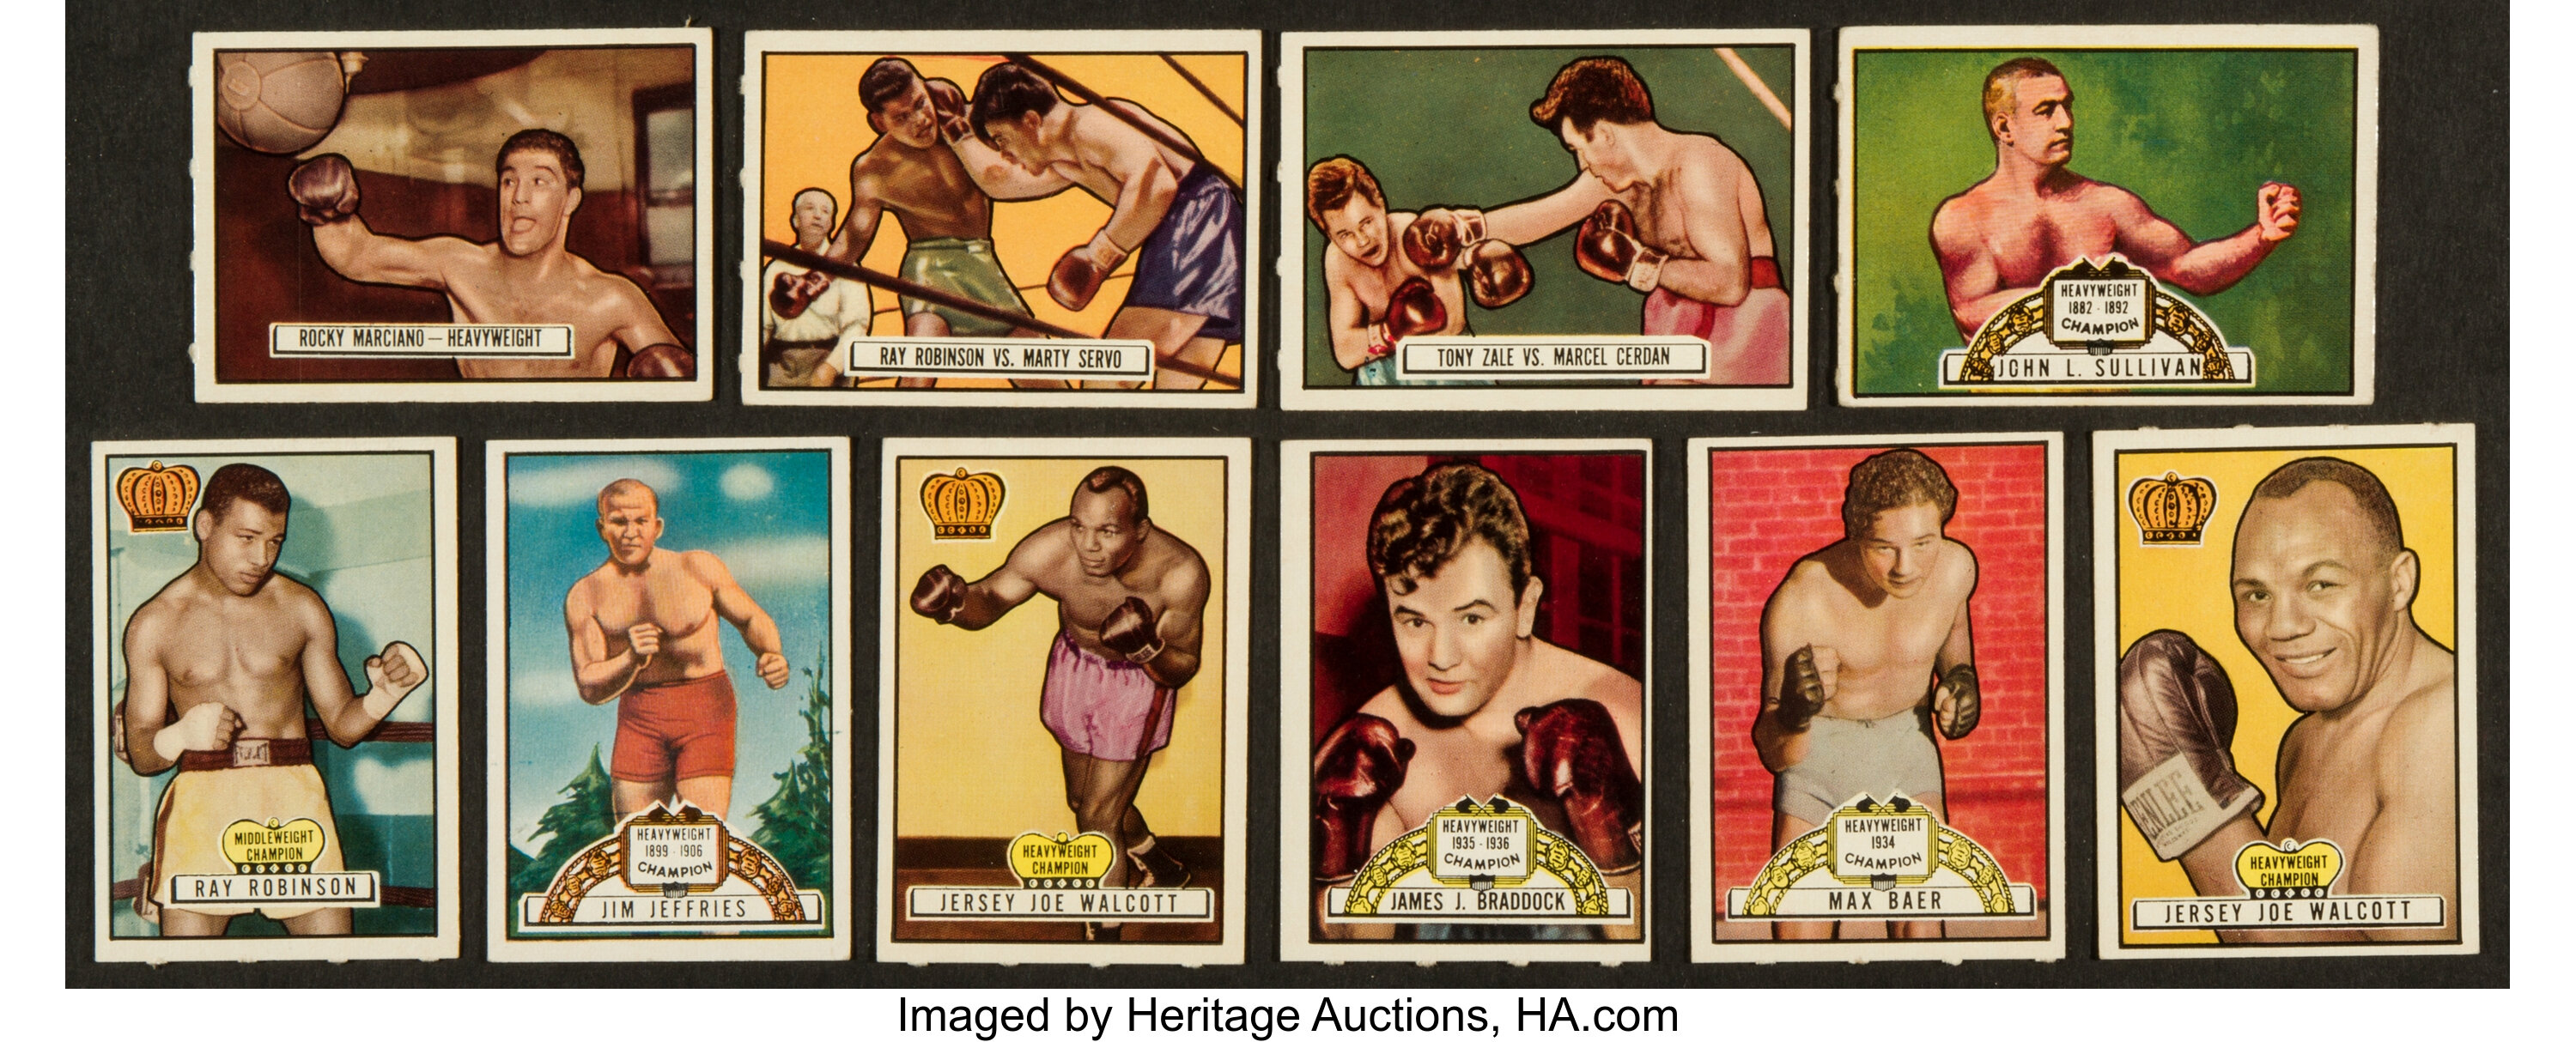 6 Boxing Cards Topps Ringside, 1951